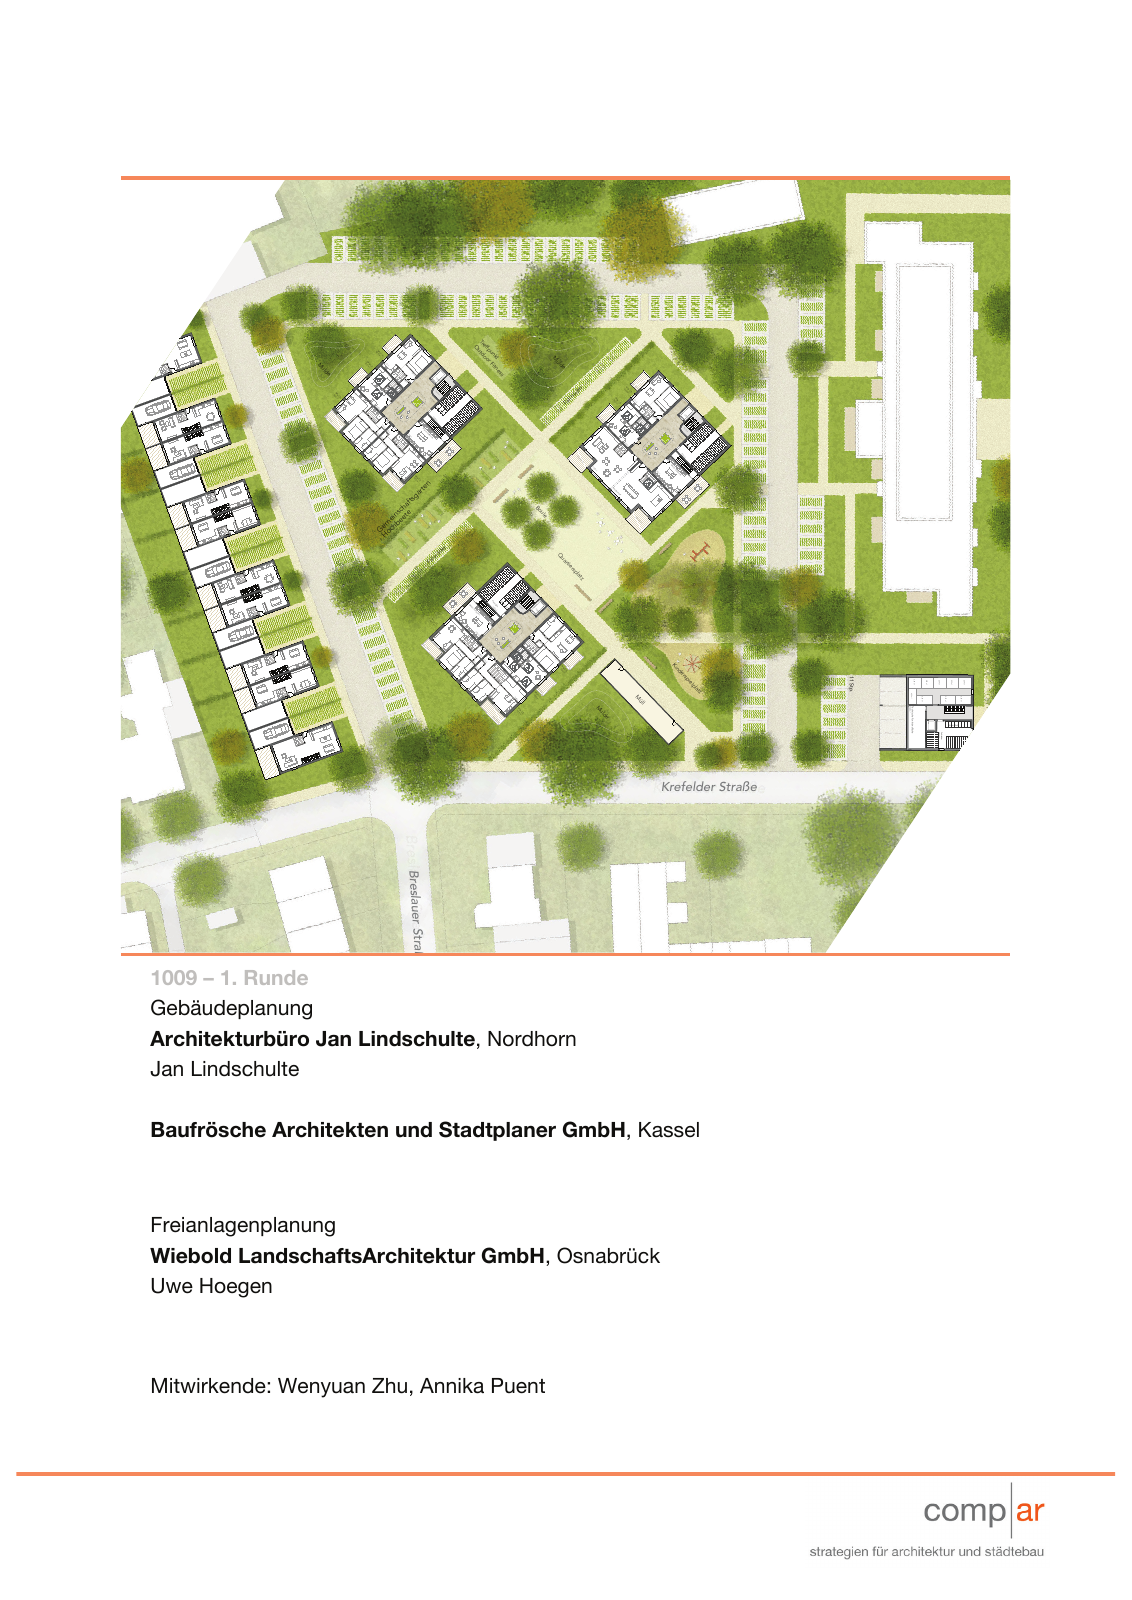 Vorschau Neubau von 100 Wohneinheiten [Nordhorn] Seite 57